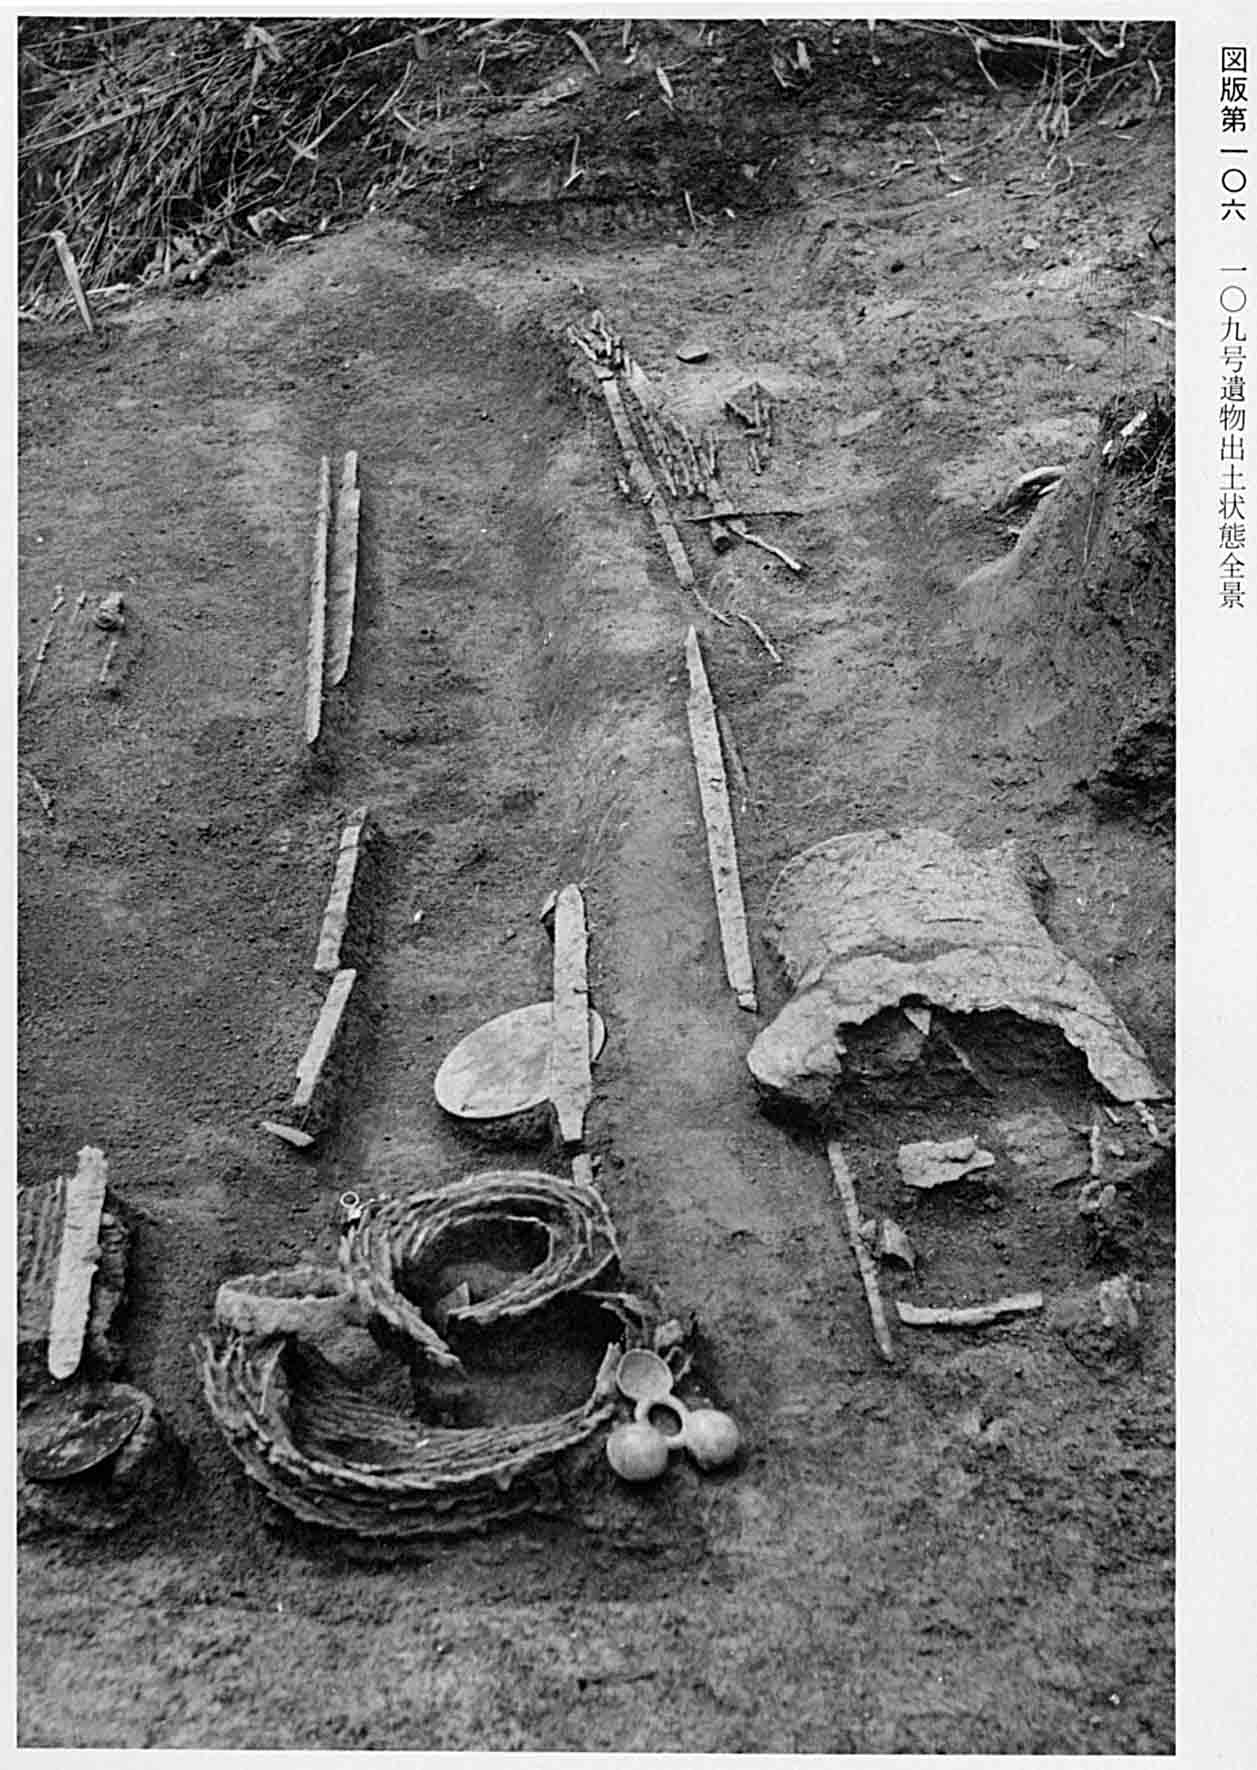 剣や鎧などが並べられている、図版106 109号遺物出土状態全景のモノクロ写真